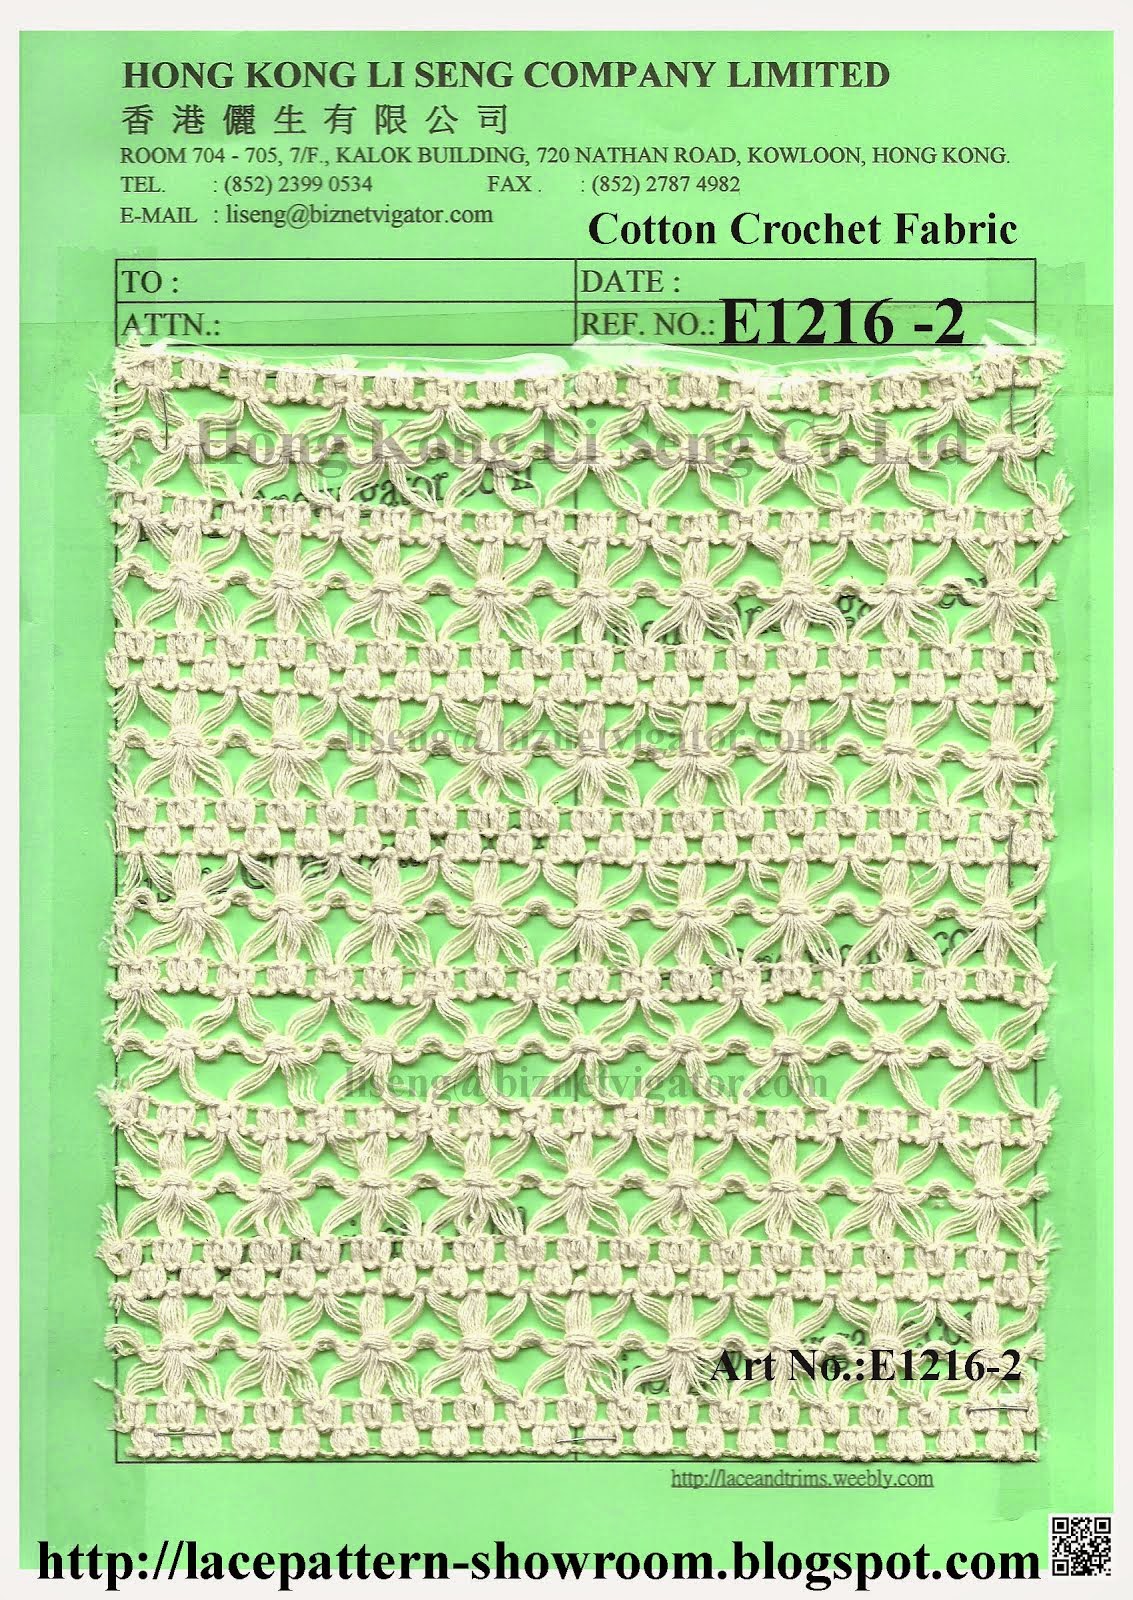 Cotton Crochet Fabric Manufacturer Wholesale and Supplier - Hong Kong Li Seng Co Ltd